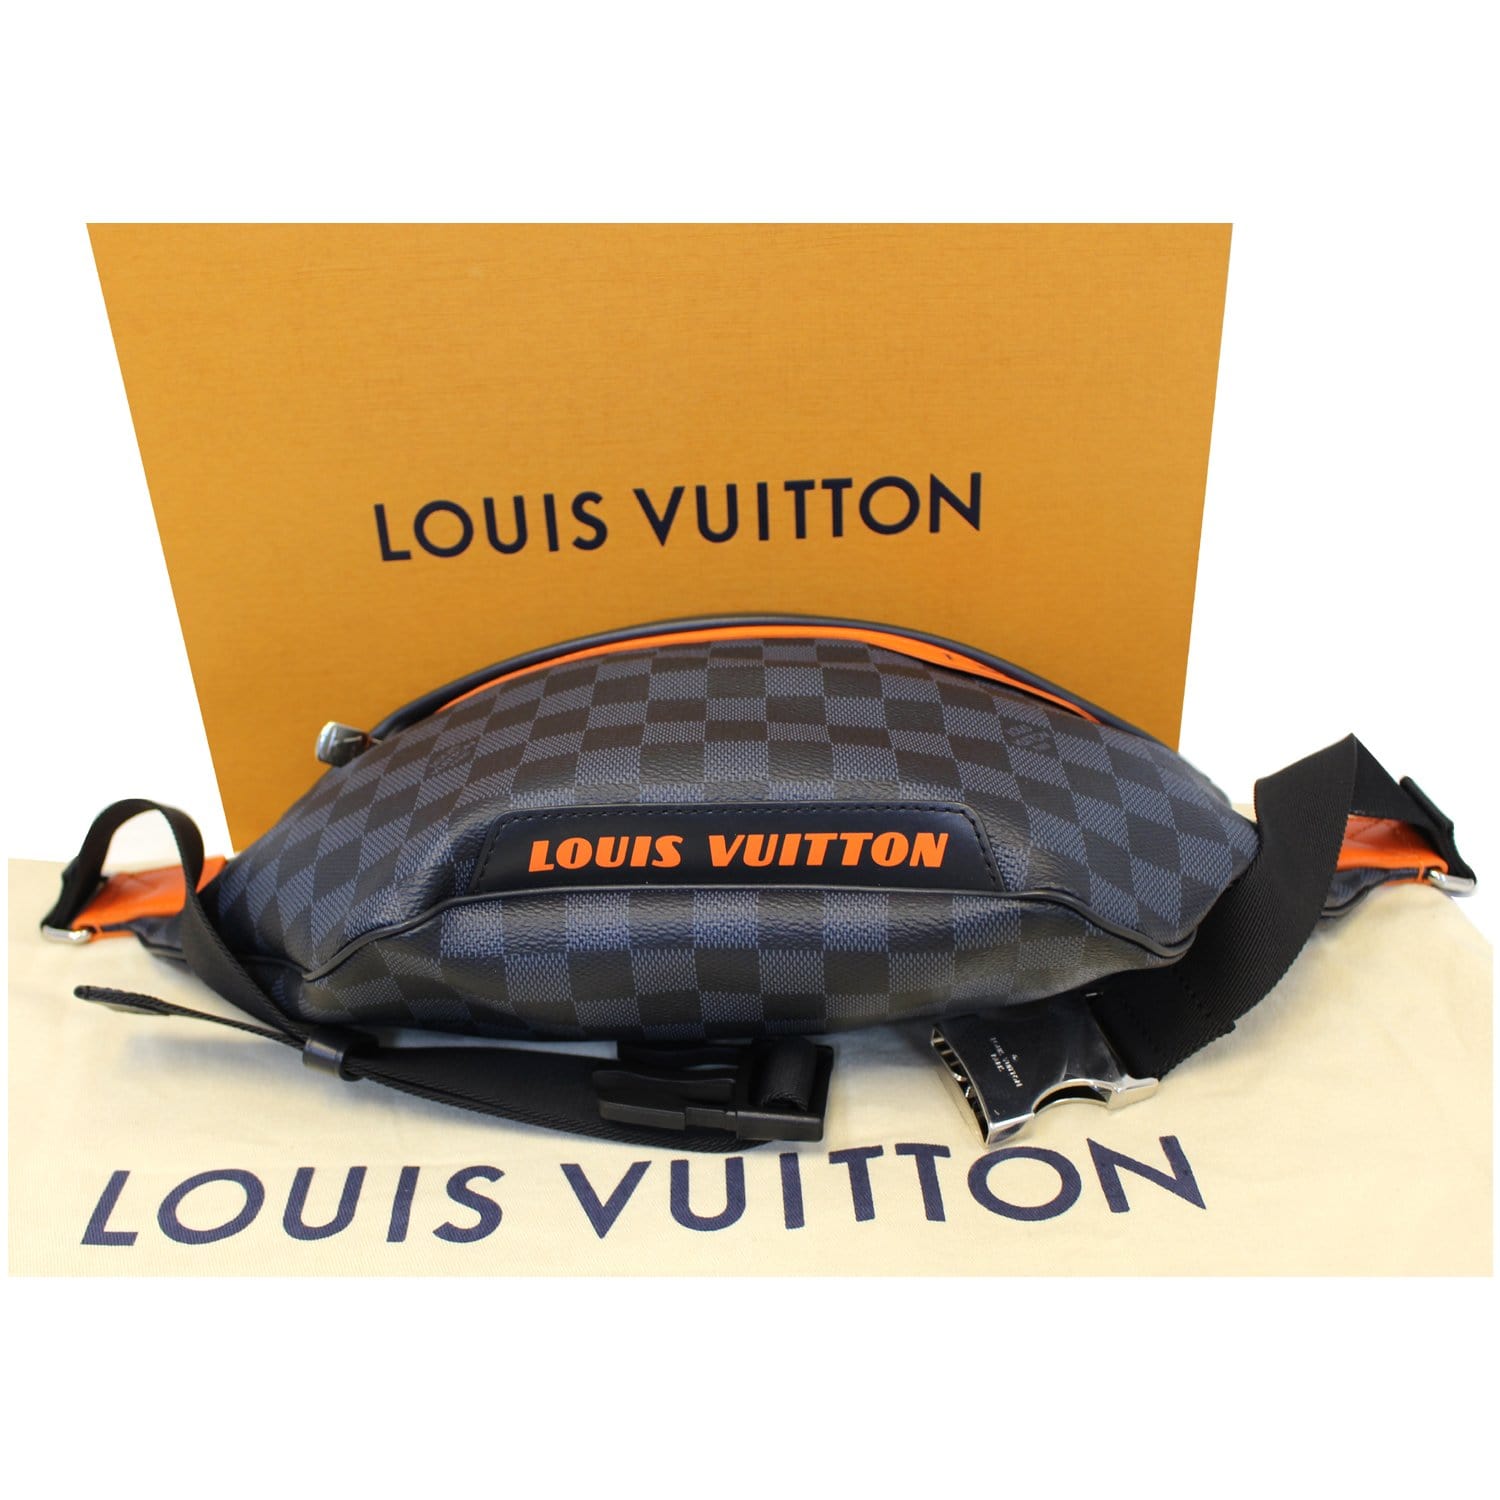 Louis Vuitton on X: A high-octane boost. The new Damier Cobalt